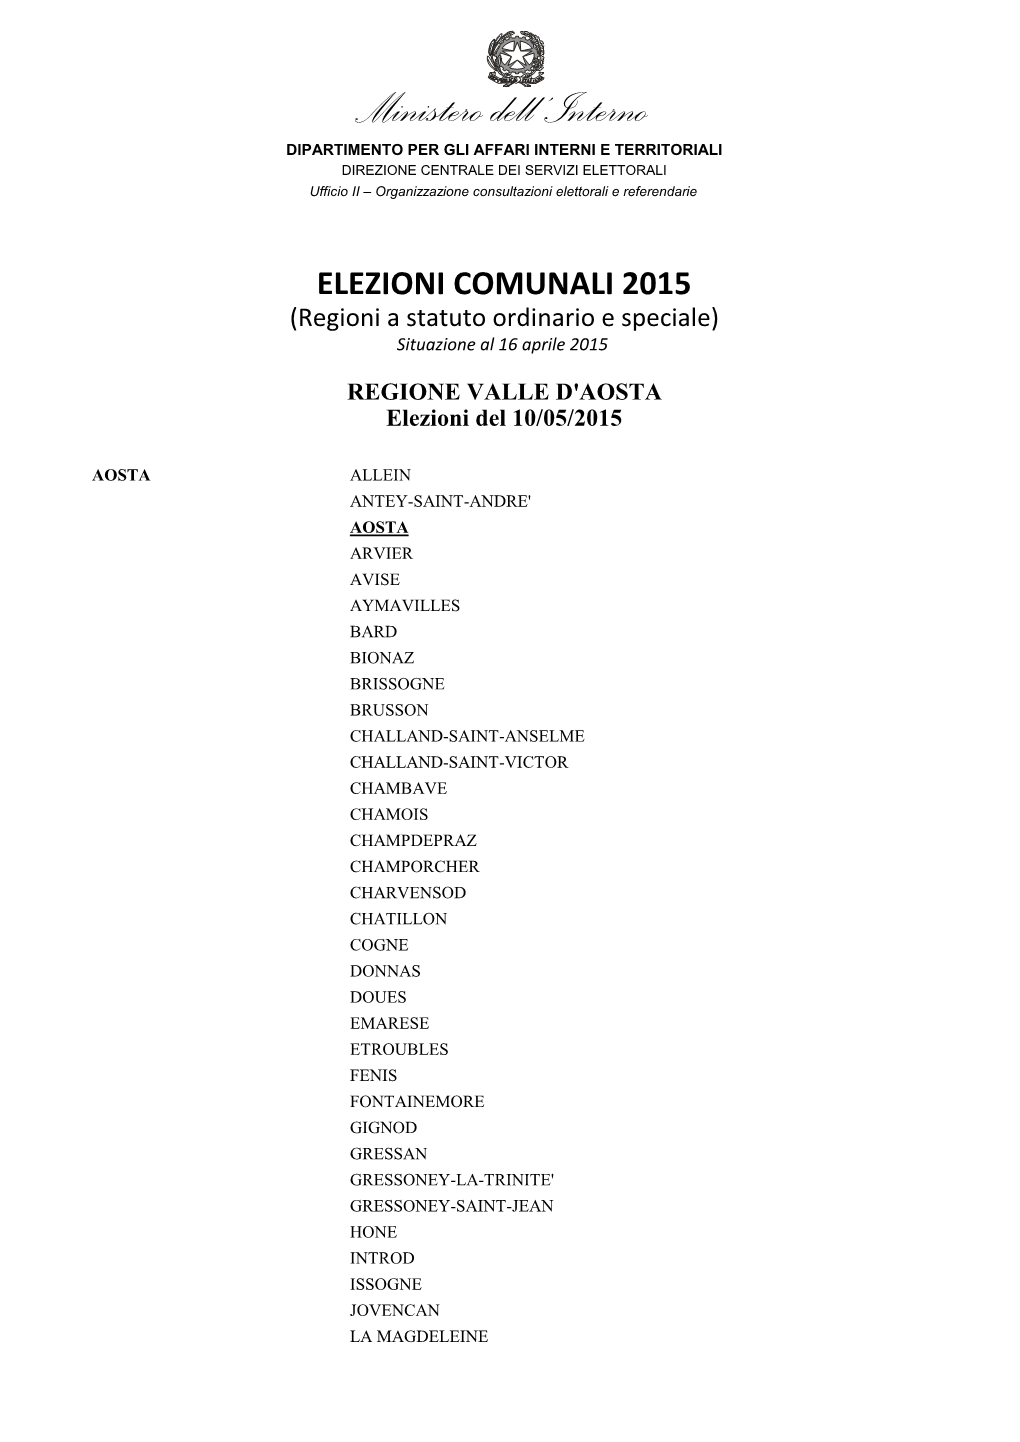 Elenco Comuni Elezioni Primavera 2015